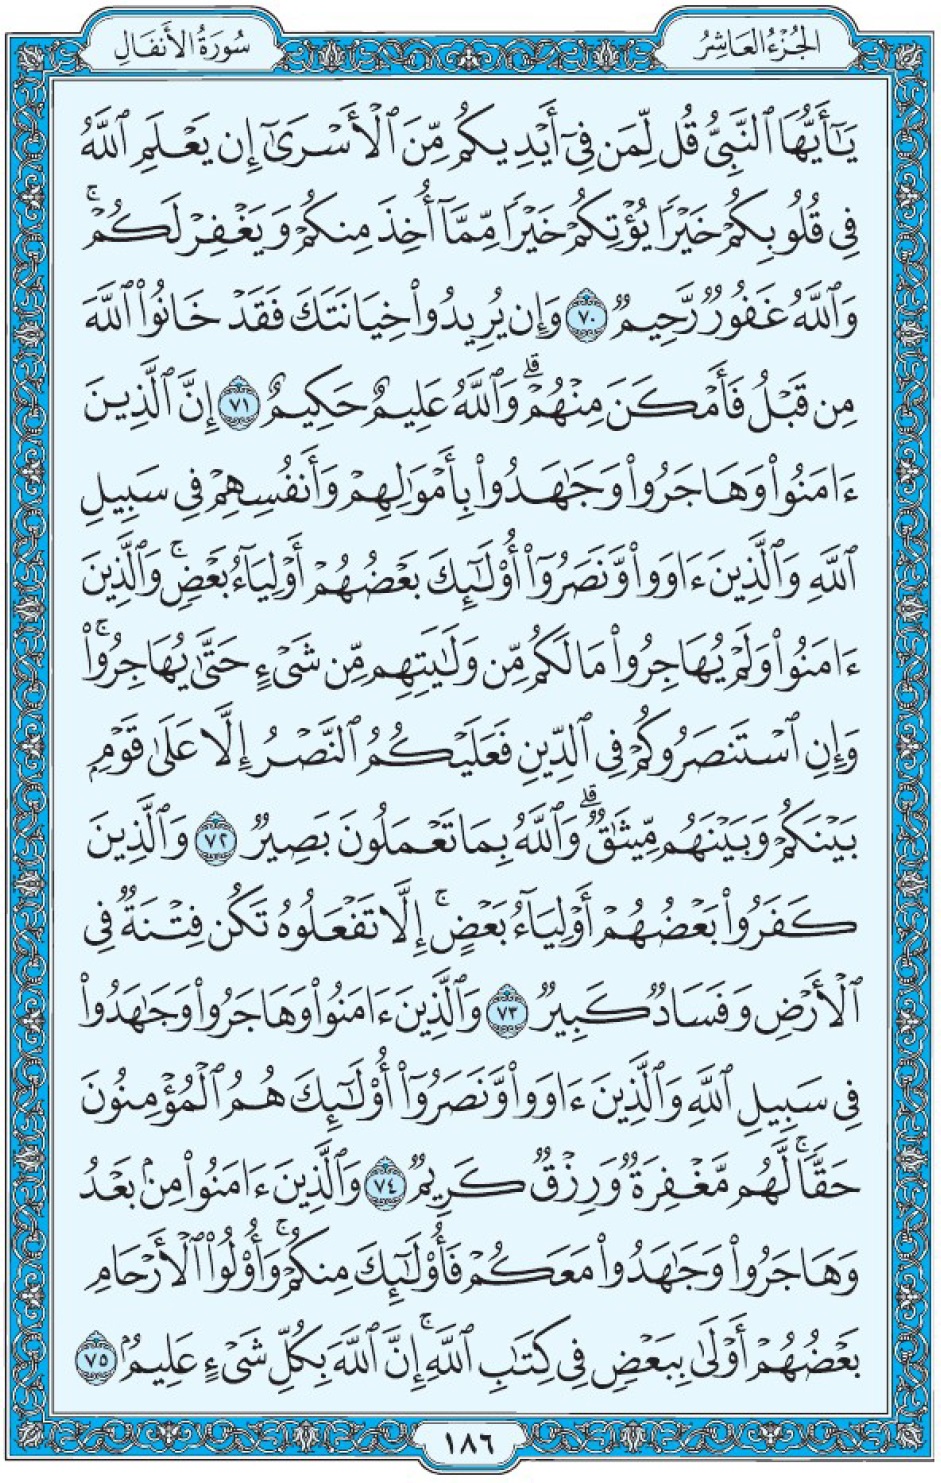 Коран Мединский мусхаф страница 186, Аль-Анфаль, аят 70-75